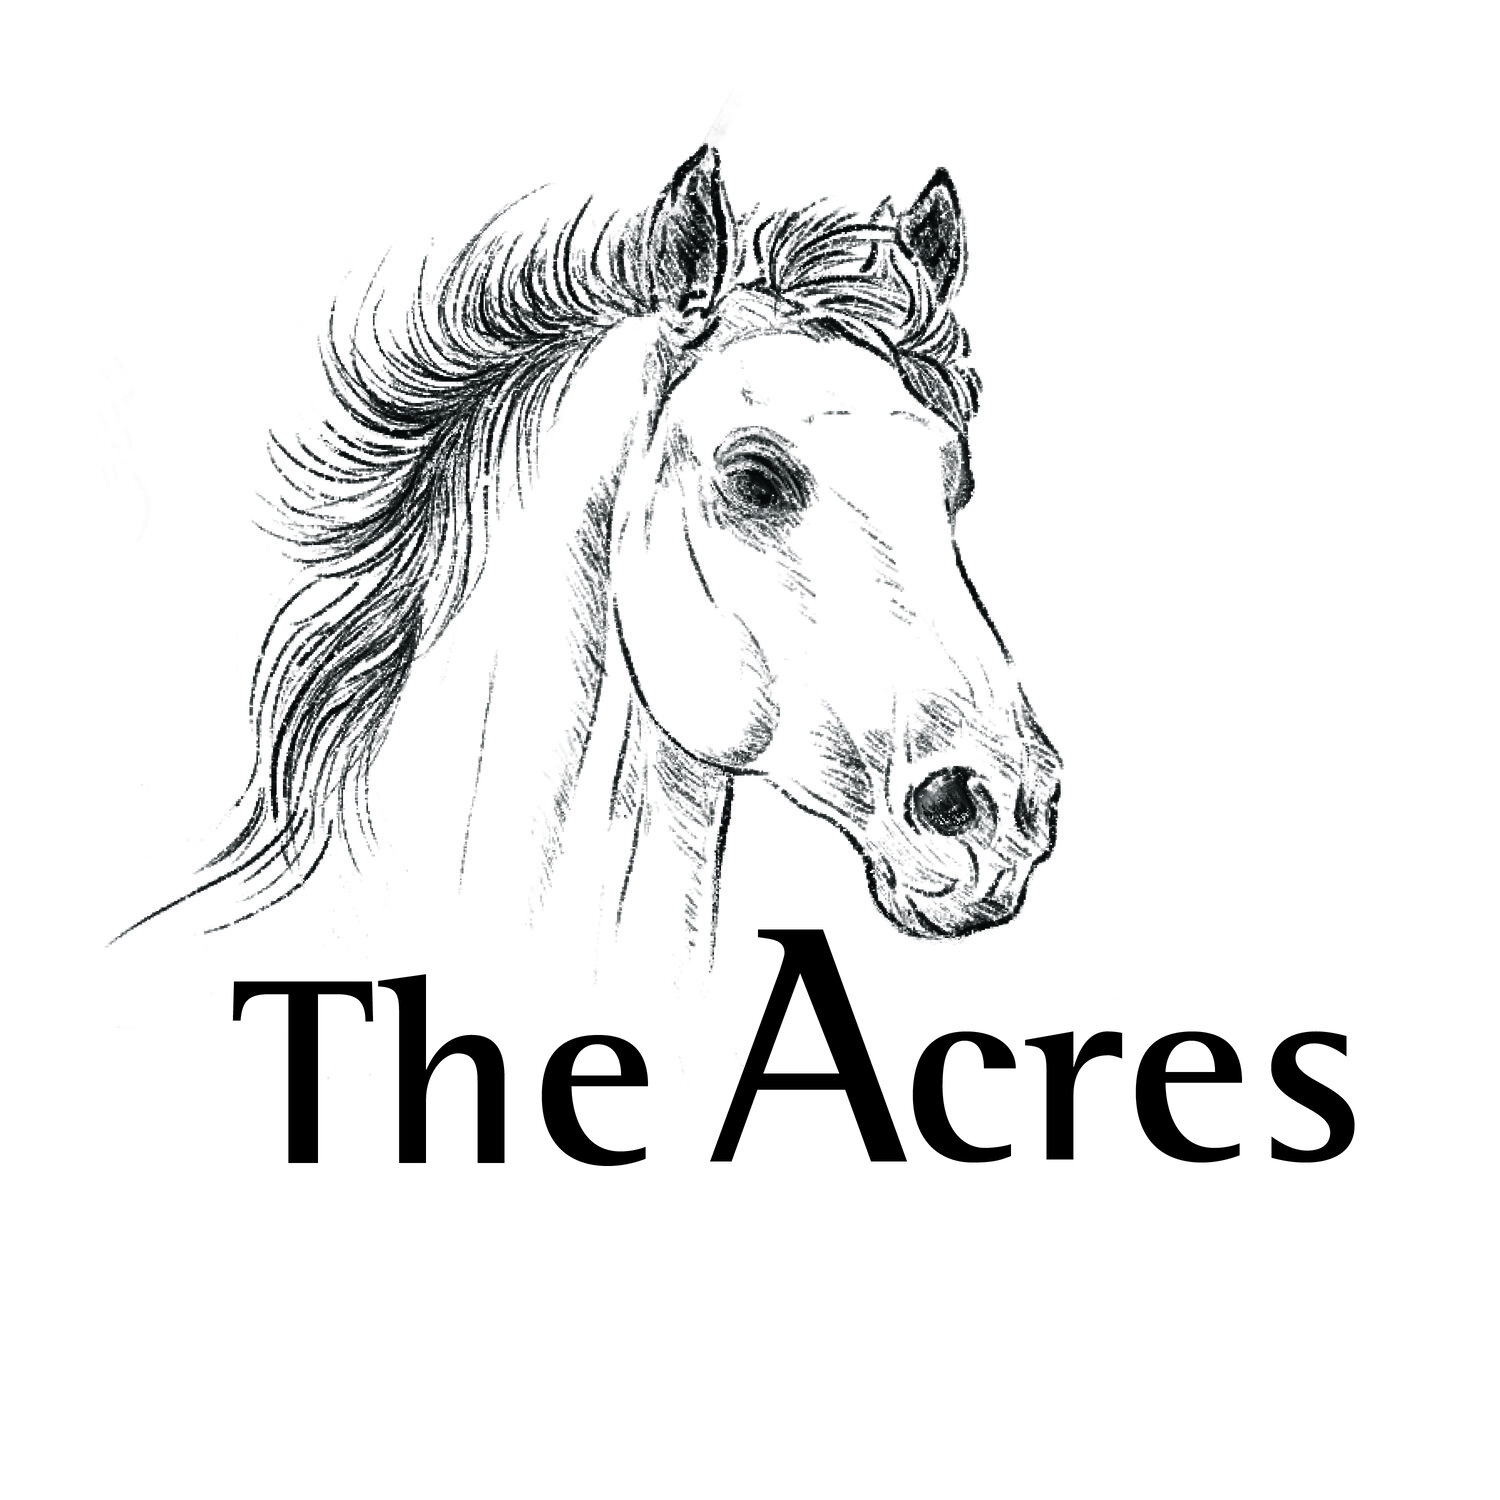 The Acres